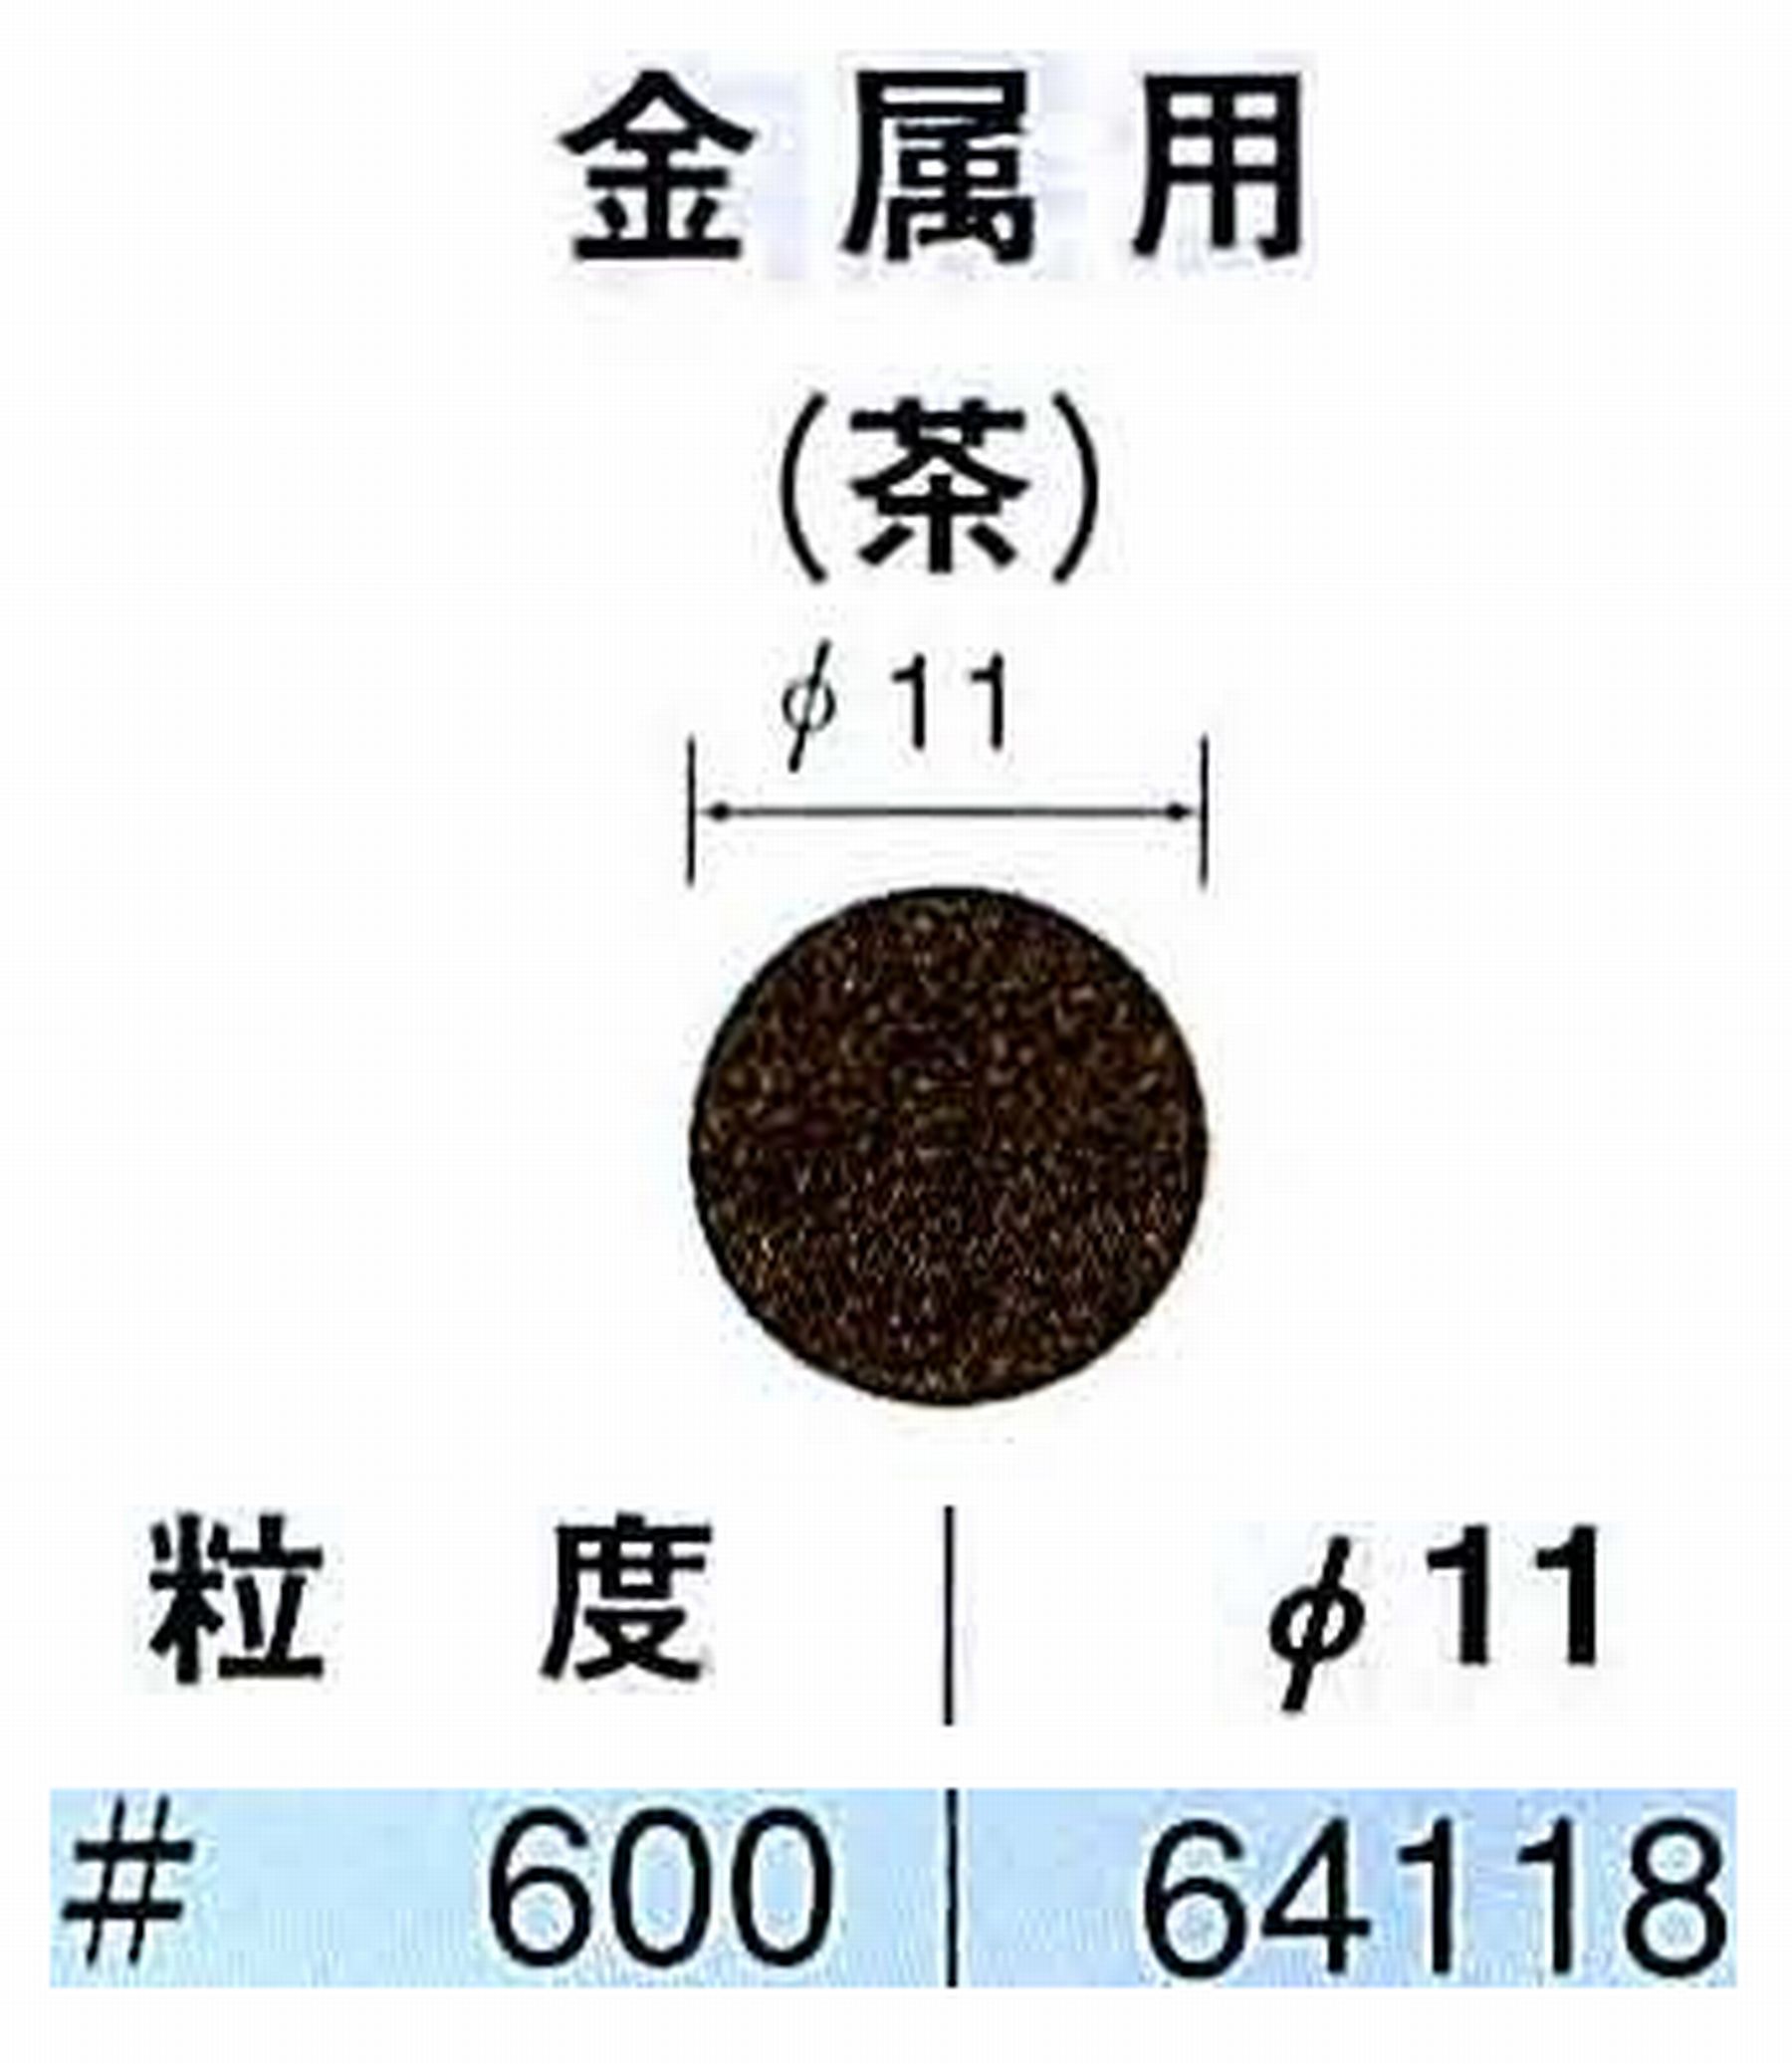 ナカニシ/NAKANISHI アングルグラインダ(電動・エアー) アングルアタッチメント専用工具 サンドペーパーディスク(布基材タイプ)裏面のり処理 64118